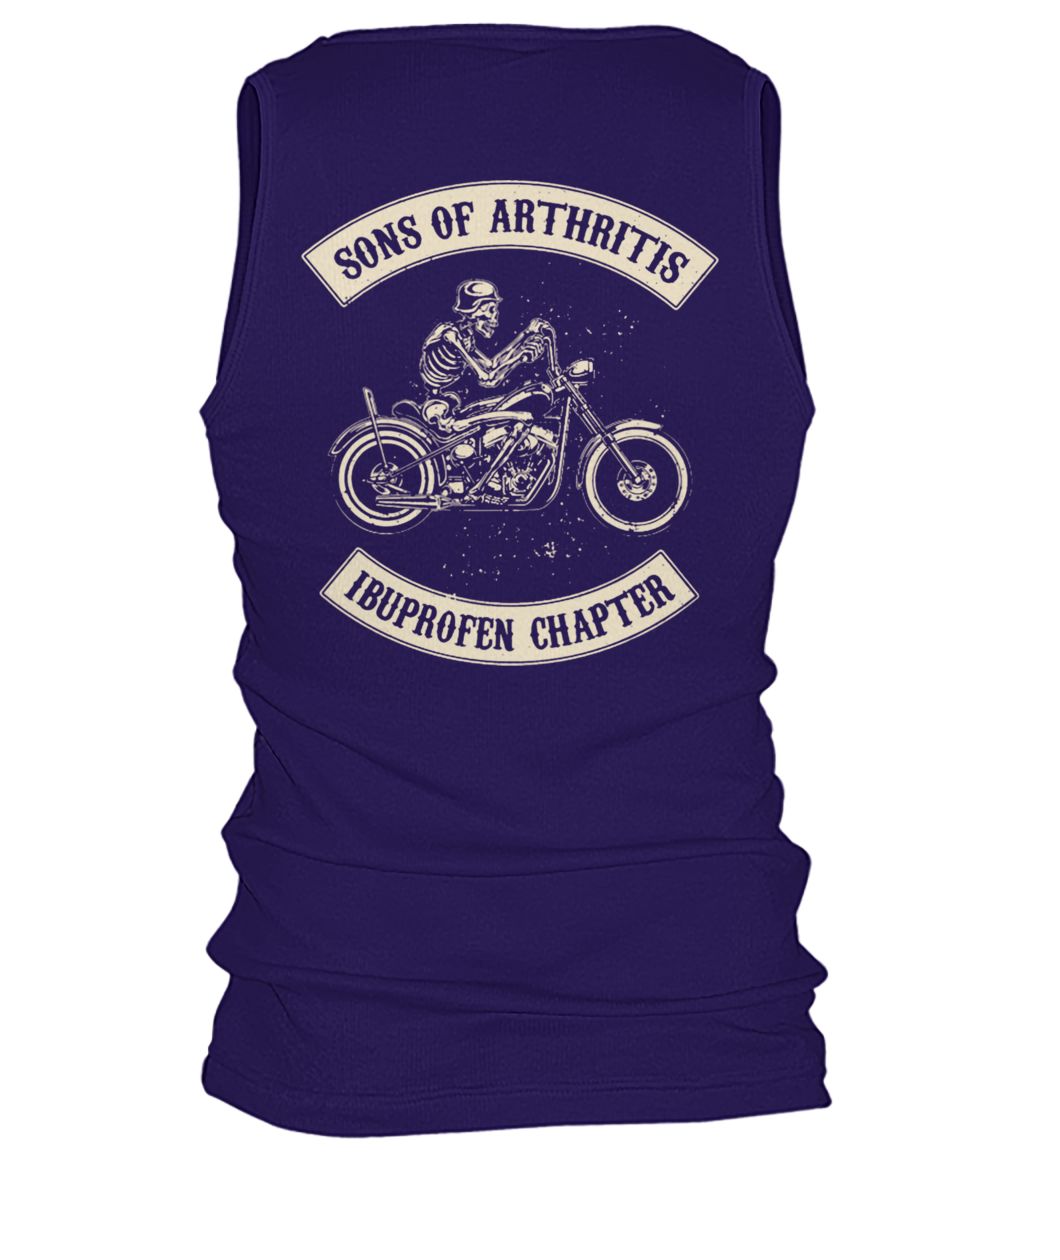 Sons of arthritis ibuprofen chapter biker men's tank top